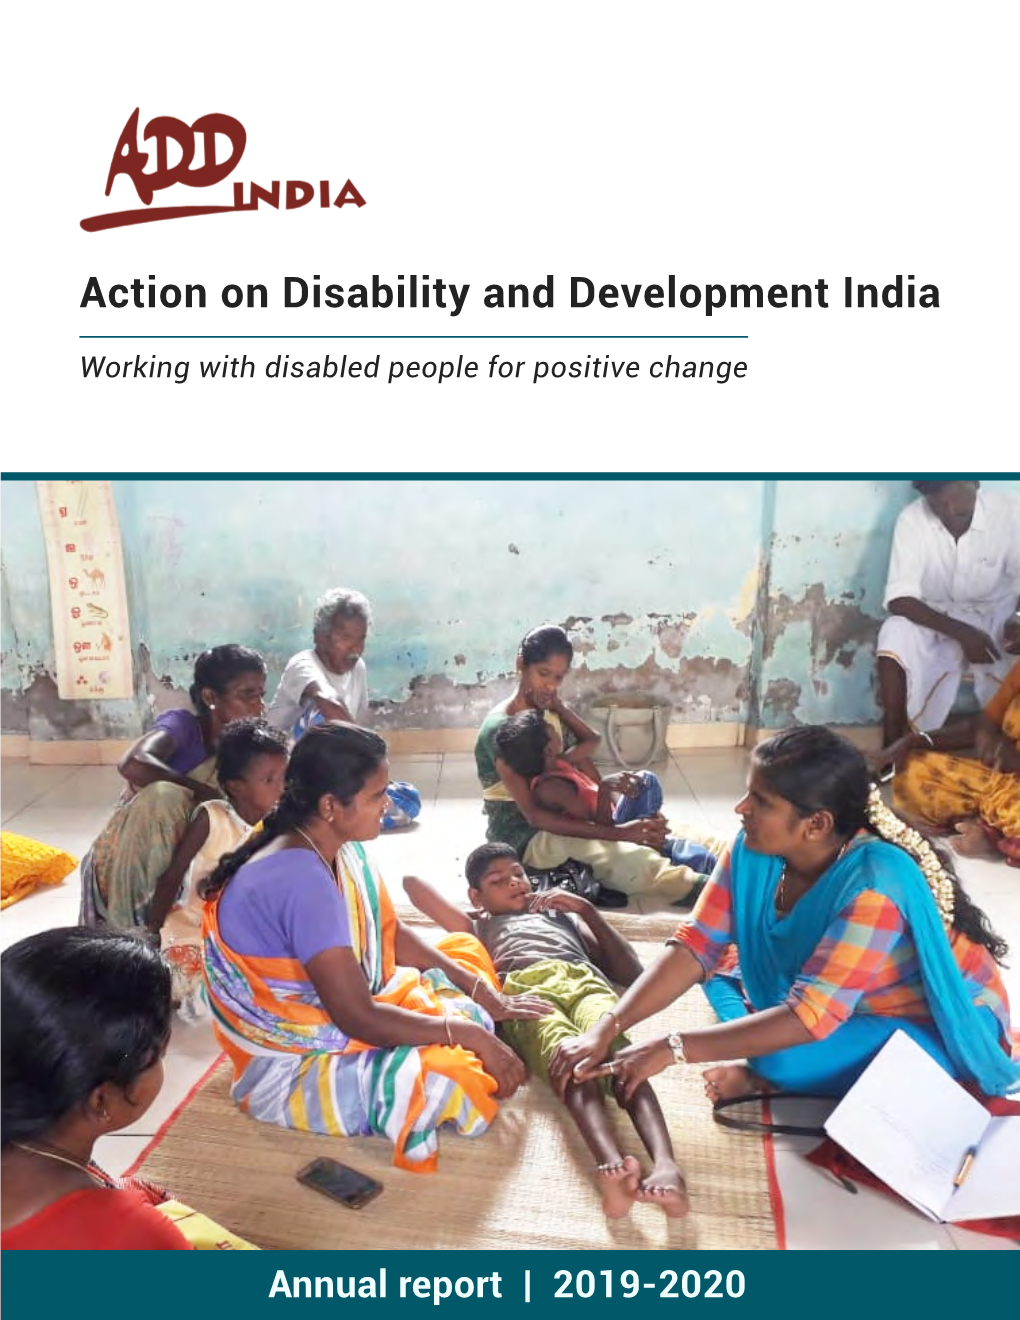 ADD India Annual Report 2019-20